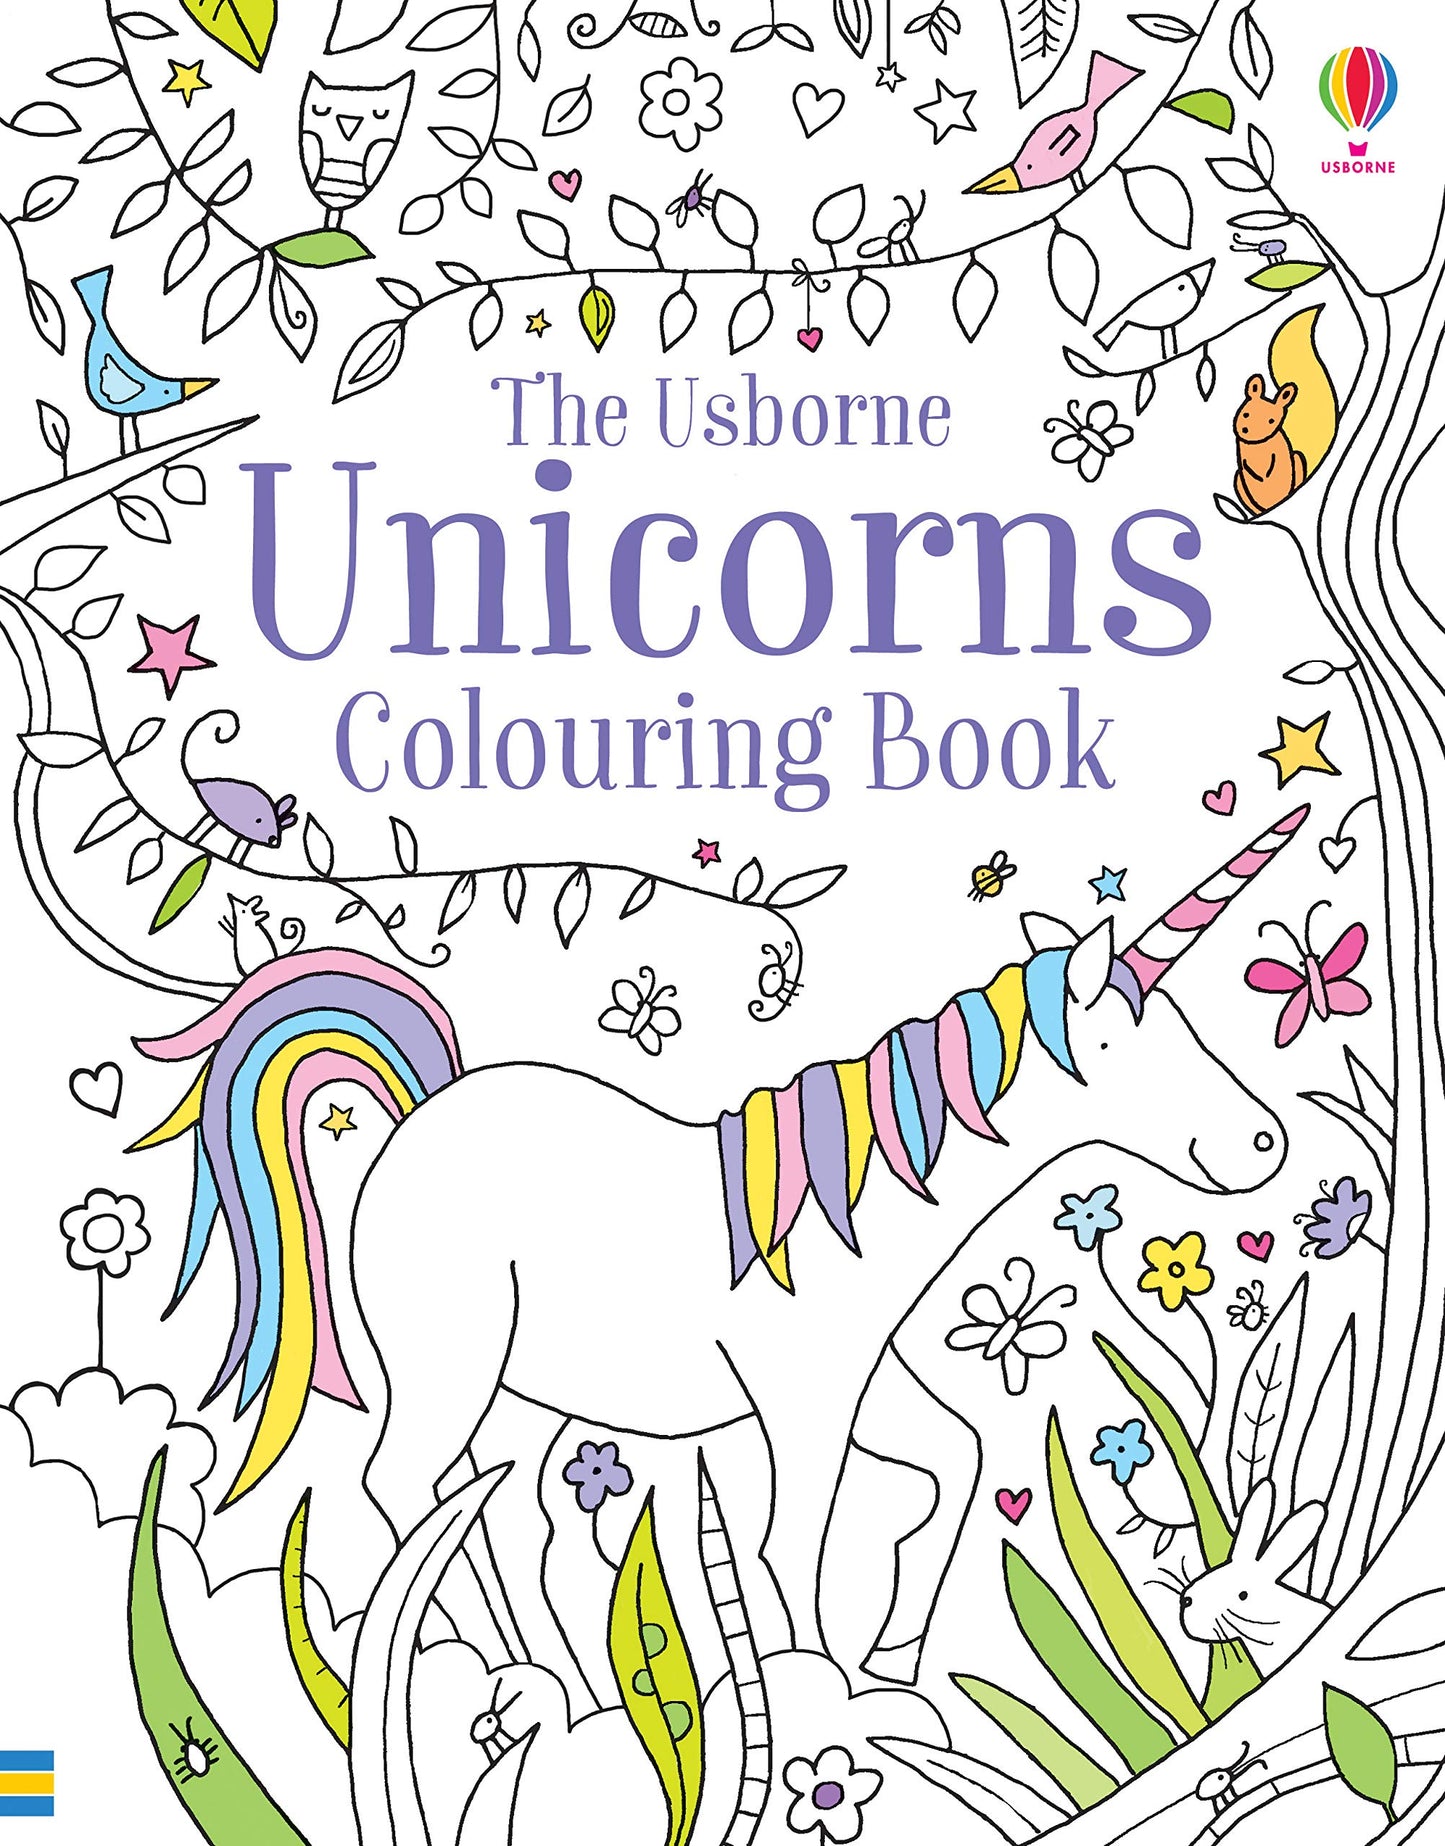 Unicorn Colouring Book